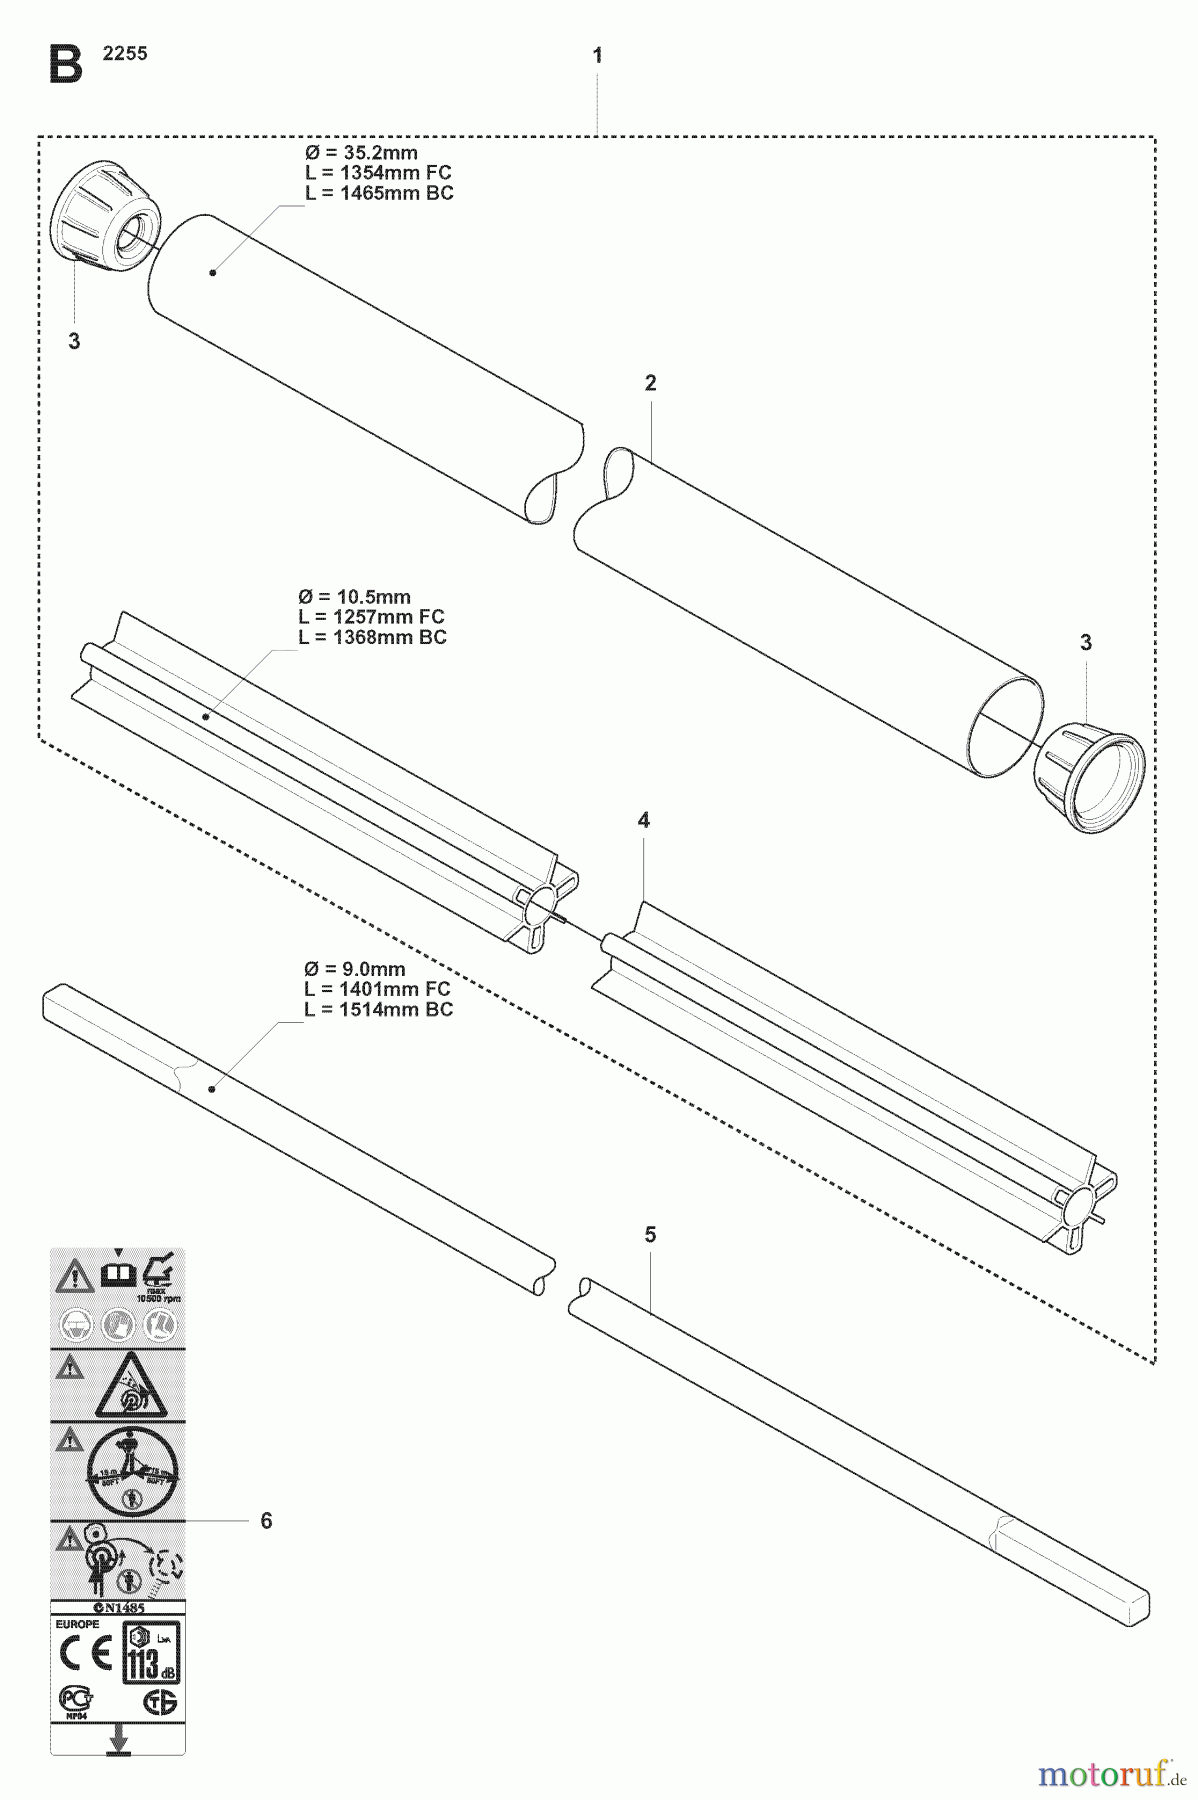  Jonsered Motorsensen, Trimmer FC2255W - Jonsered String/Brush Trimmer (2007-08) SHAFT